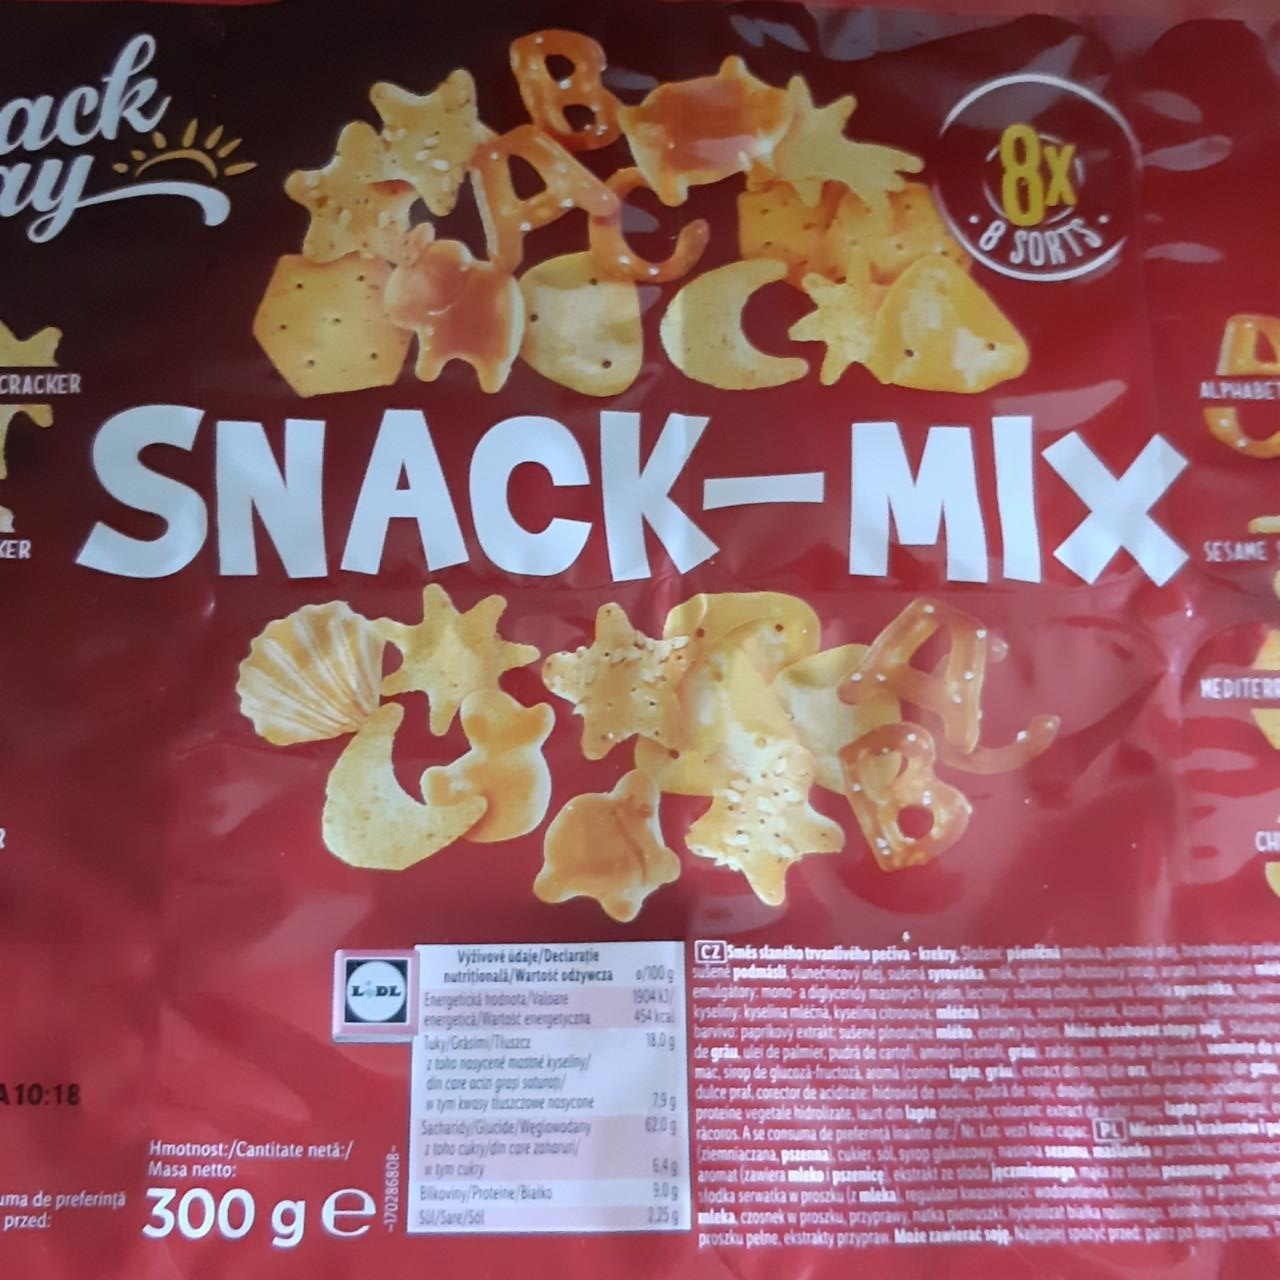 Zdjęcia - SnackDay Snack Mix 8x8 sorts